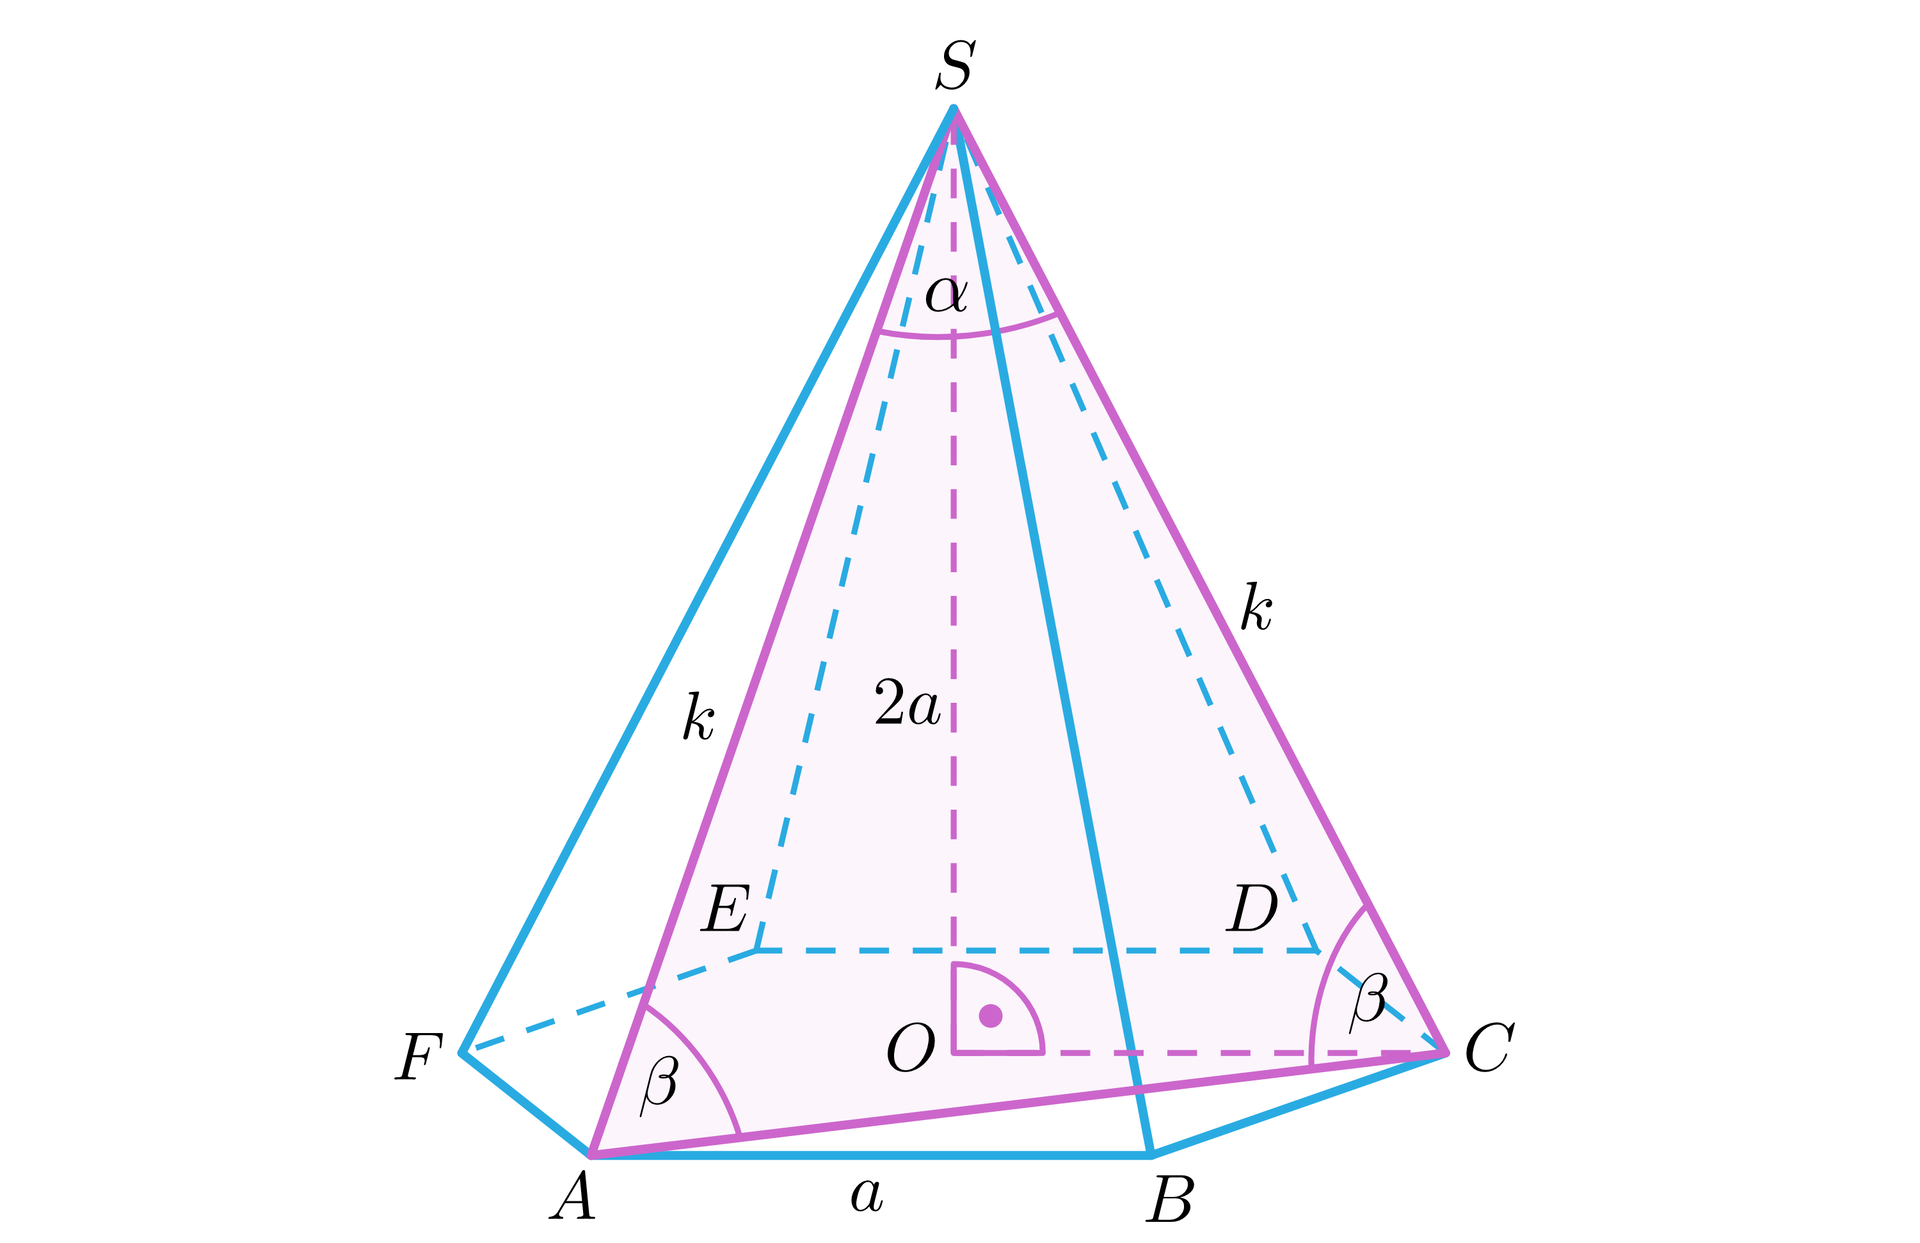 Grafika przedstawia ostrosłup prawidłowy sześciokątny. Podstawa ostrosłupa składa się z wierzchołków: A, B, C, D, E, F. Wierzchołek ostrosłupa jest podpisany literą S. Długość krawędzi podstawy to a. Długość krawędzi bocznej to k. W ostrosłupie zaznaczone zostały dwie krawędzie boczne AS i CS oraz linia AC znajdująca się w płaszczyźnie postawy, która łączy te krawędzie. Wszystkie zaznaczone linie tworzą trójkąt ACS. Kąt pomiędzy krawędziami jest zaznaczony litera alfa. W podstawie ostrosłupa zaznaczony został jej środek O. Odcinek OS jest wysokością ostrosłupa i ma długość 2a. Jest on jedną z przyprostokątnych trójkąta prostokątnego OCS. Kąt OCS jest podpisany literą beta. 